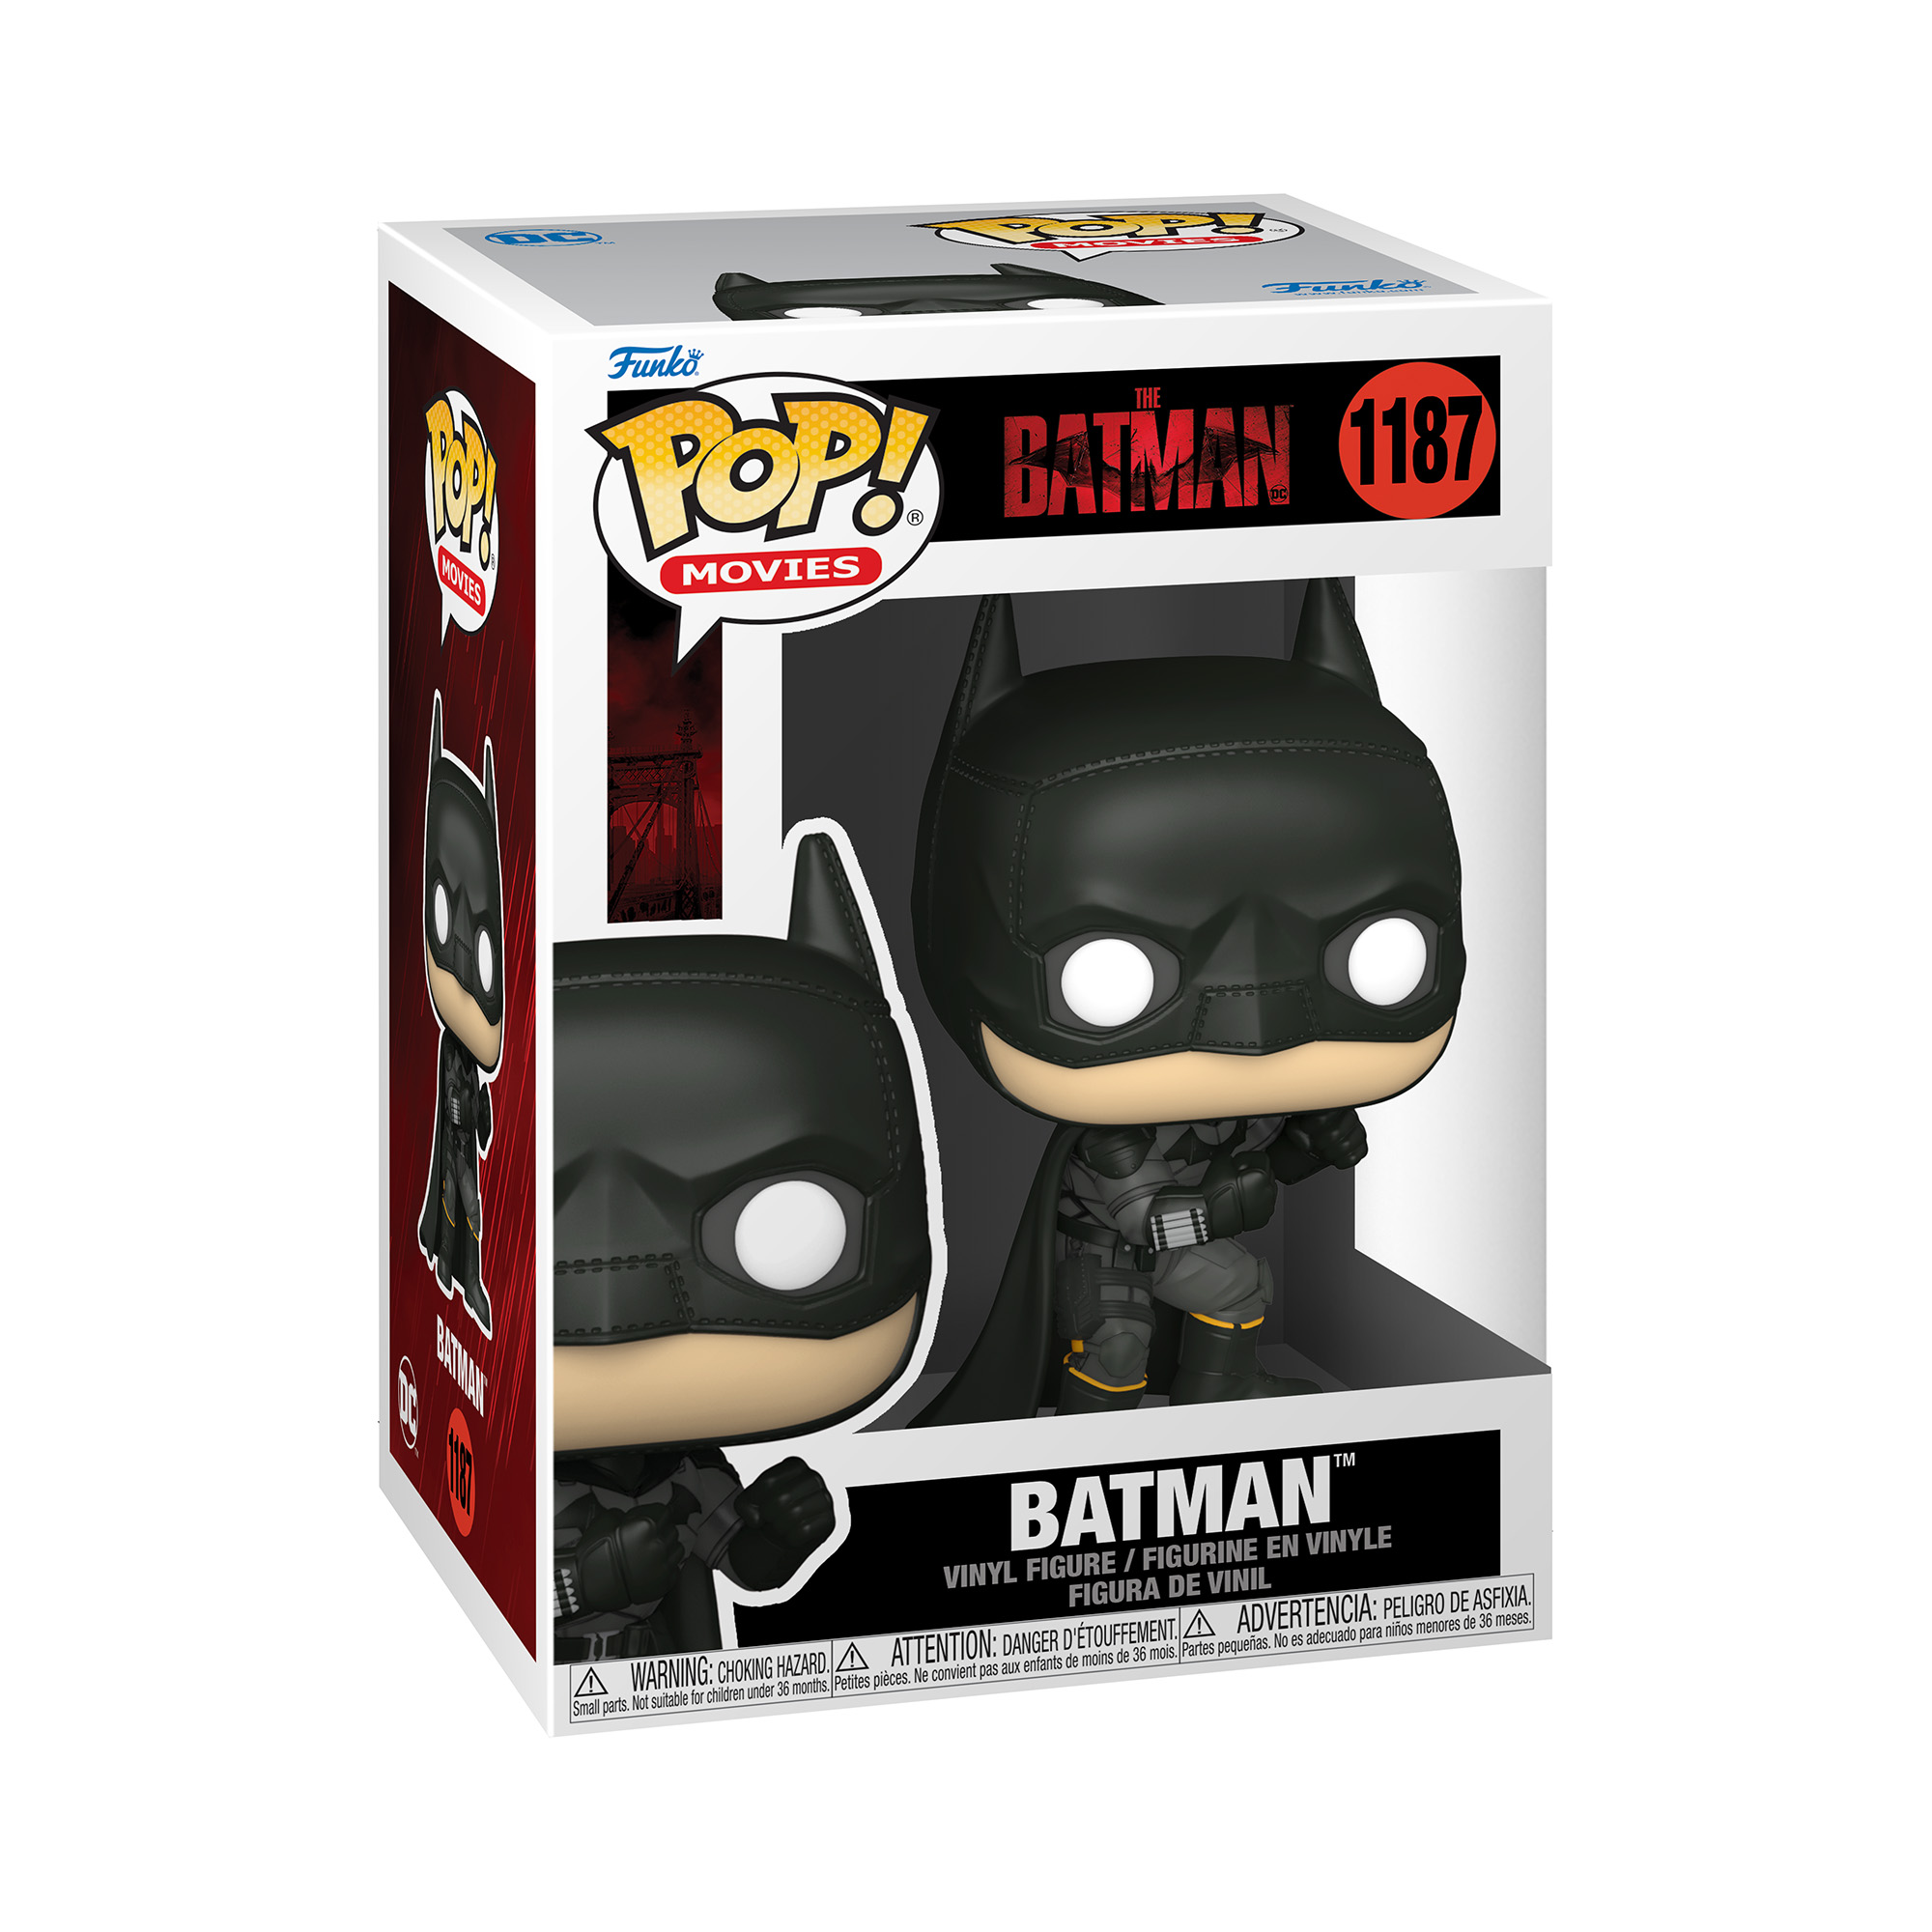 Pop movies: batman - BATMAN, DC COMICS, FUNKO POP!